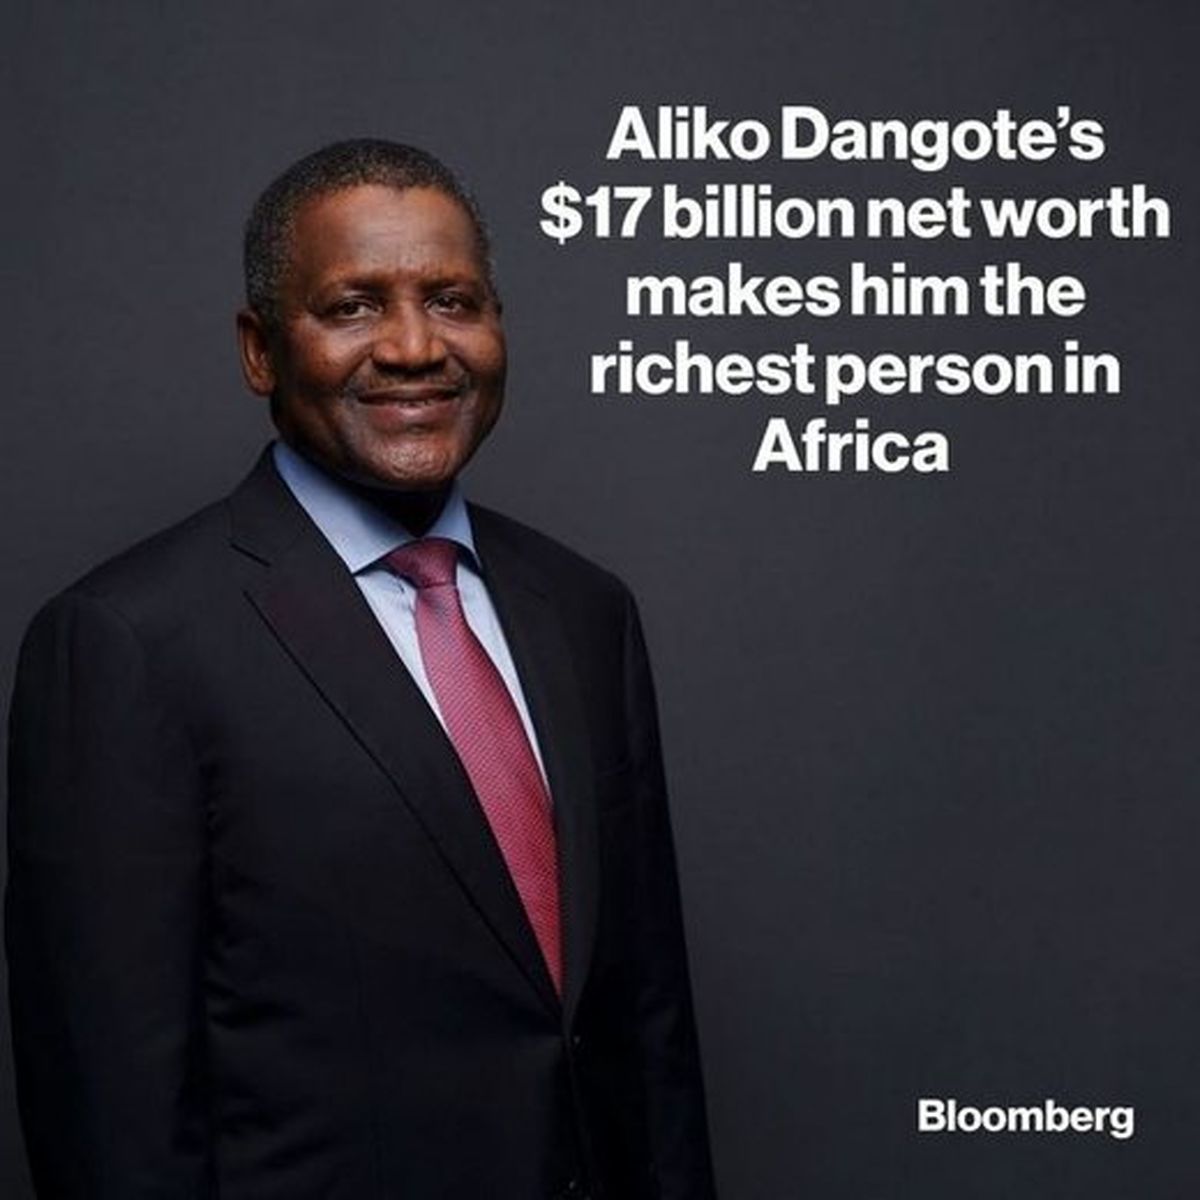 ثروتمندترین فرد آفریقا چقدر ثروت دارد؟